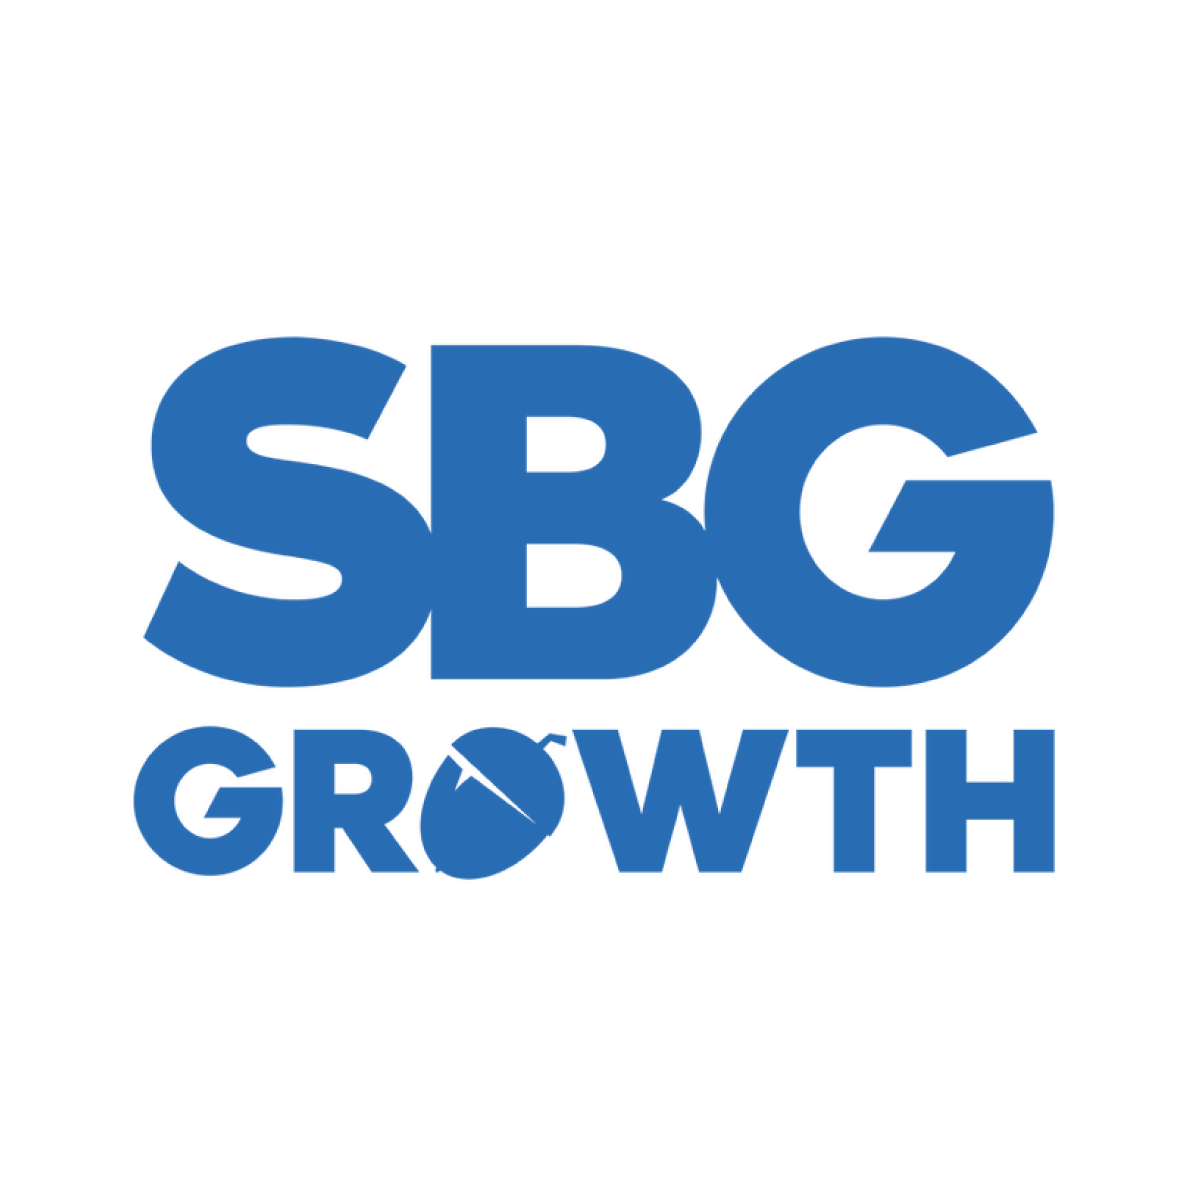 SBG Growth